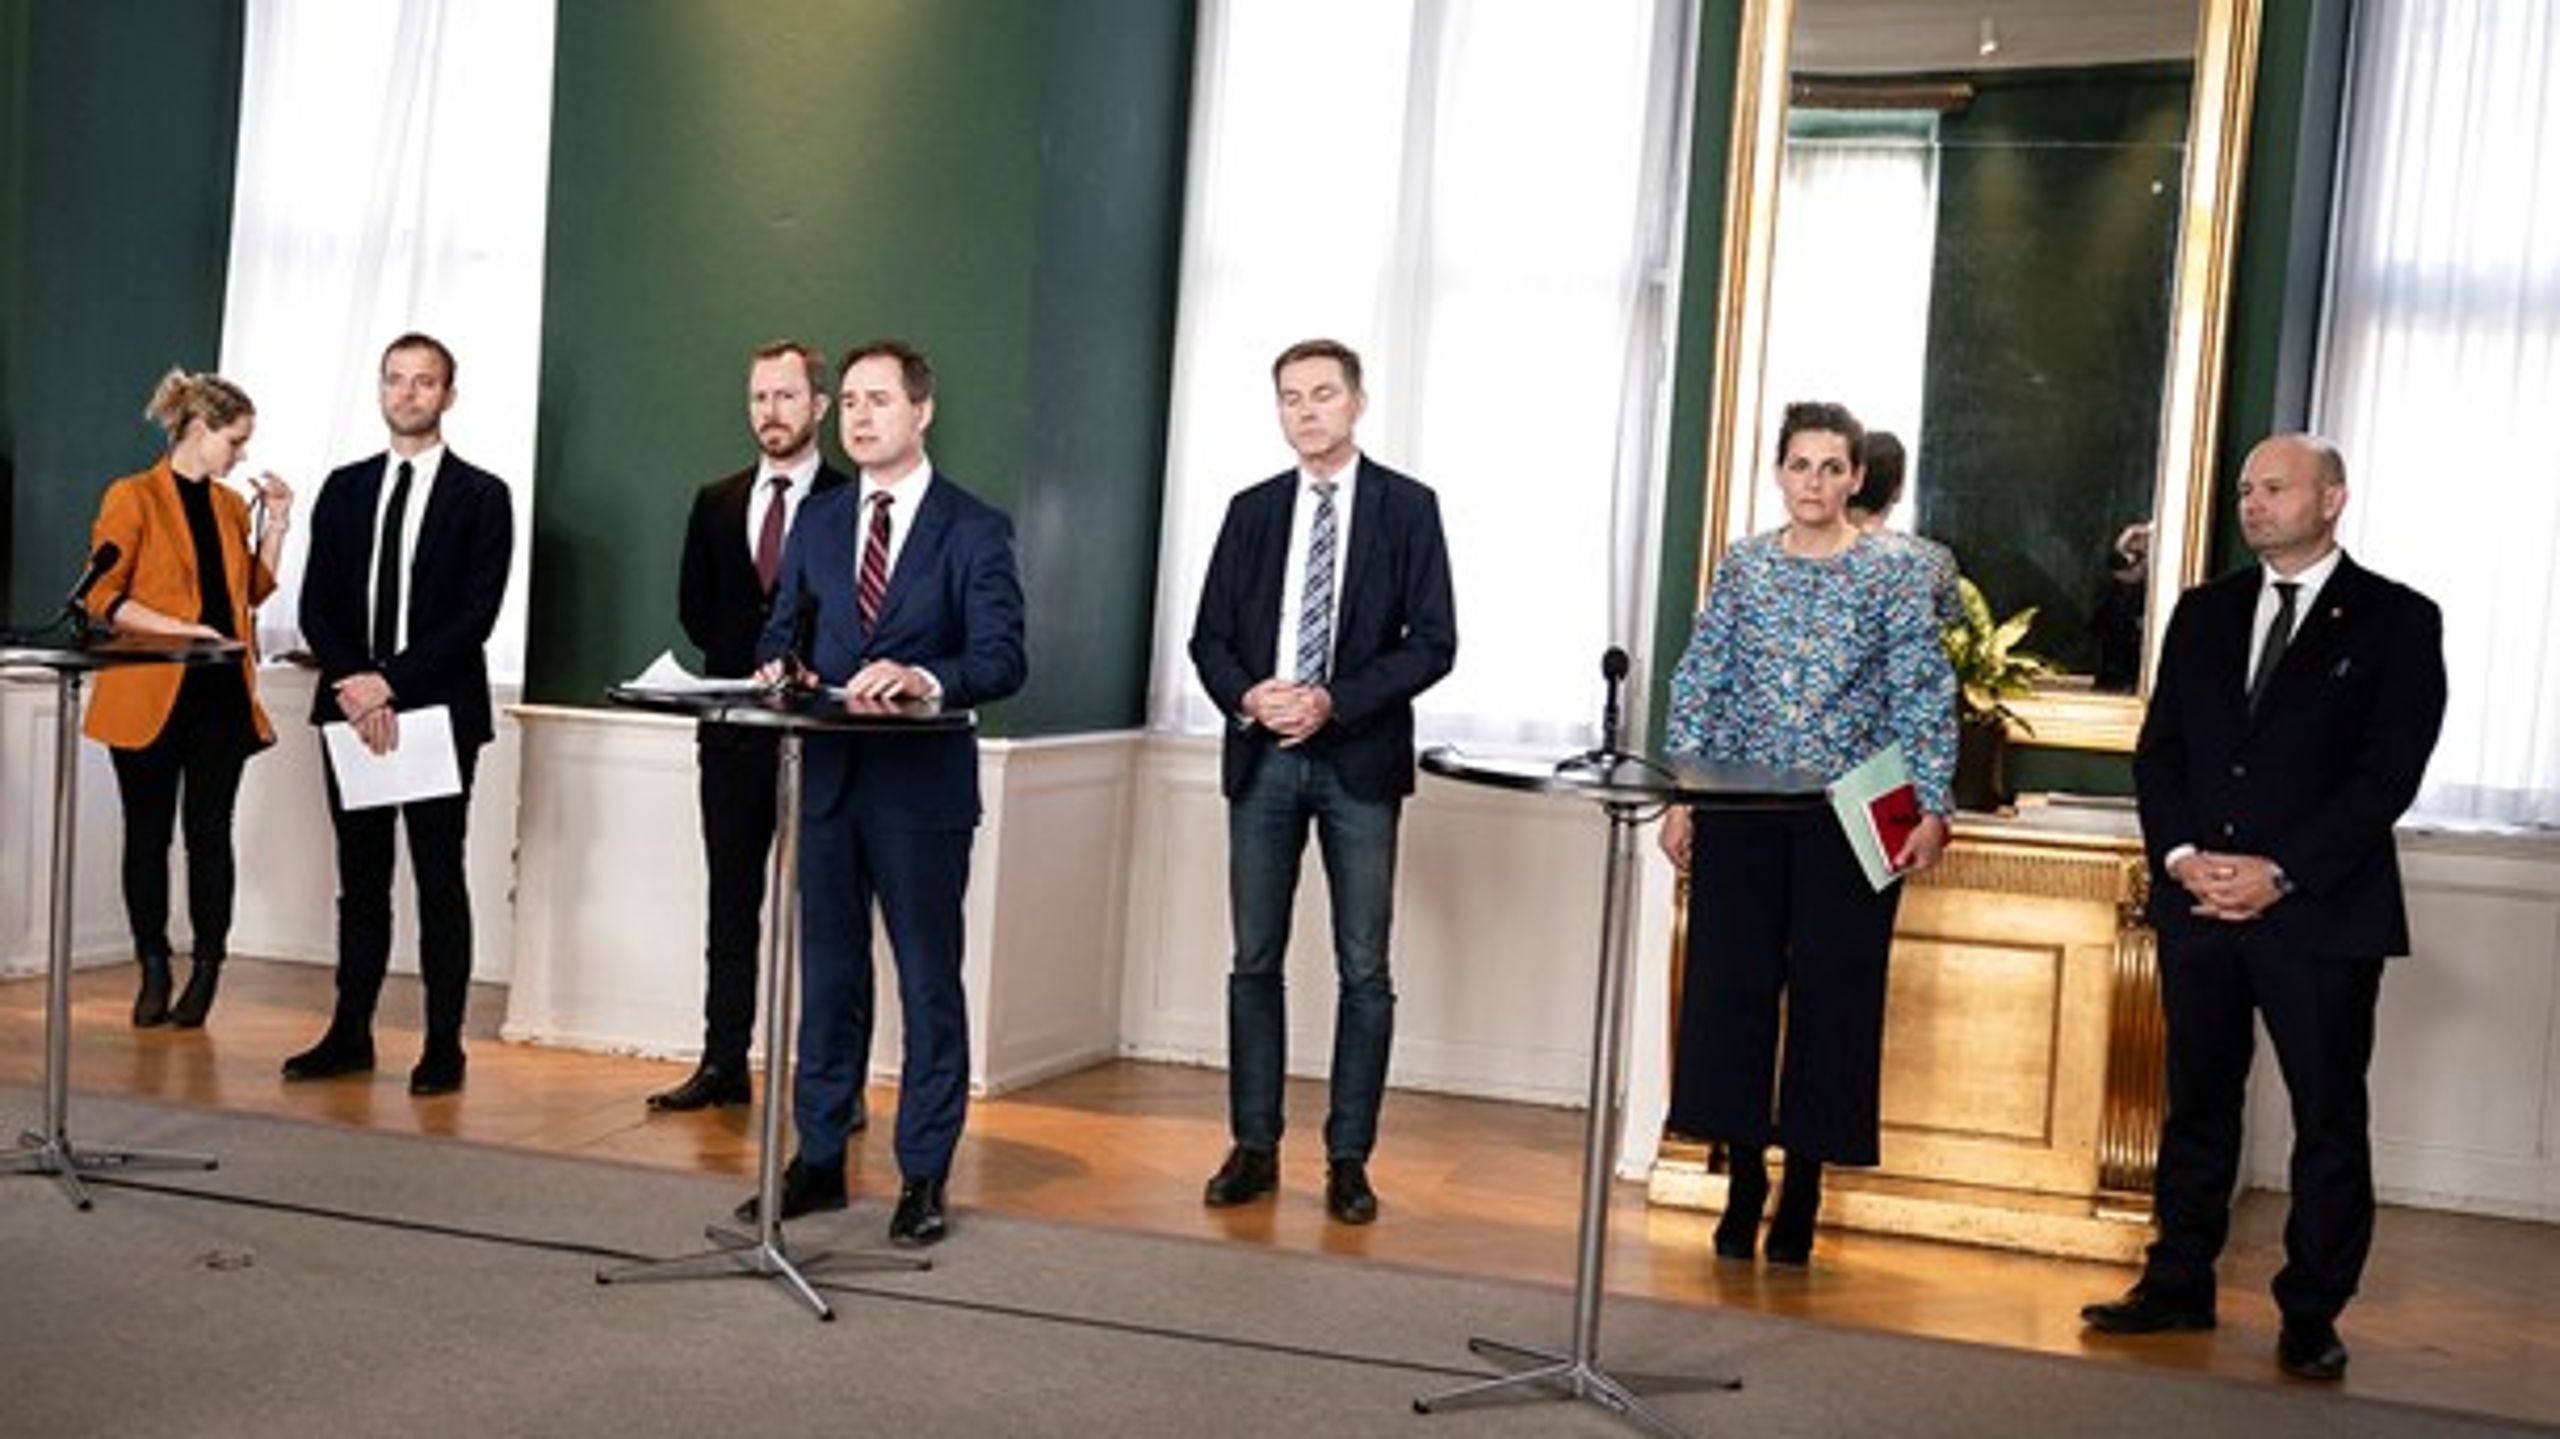 Finansminister Nicolai Wammen (S) præsenterer en ny krisepakke sammen med partilederne for alle Folketingets partier.